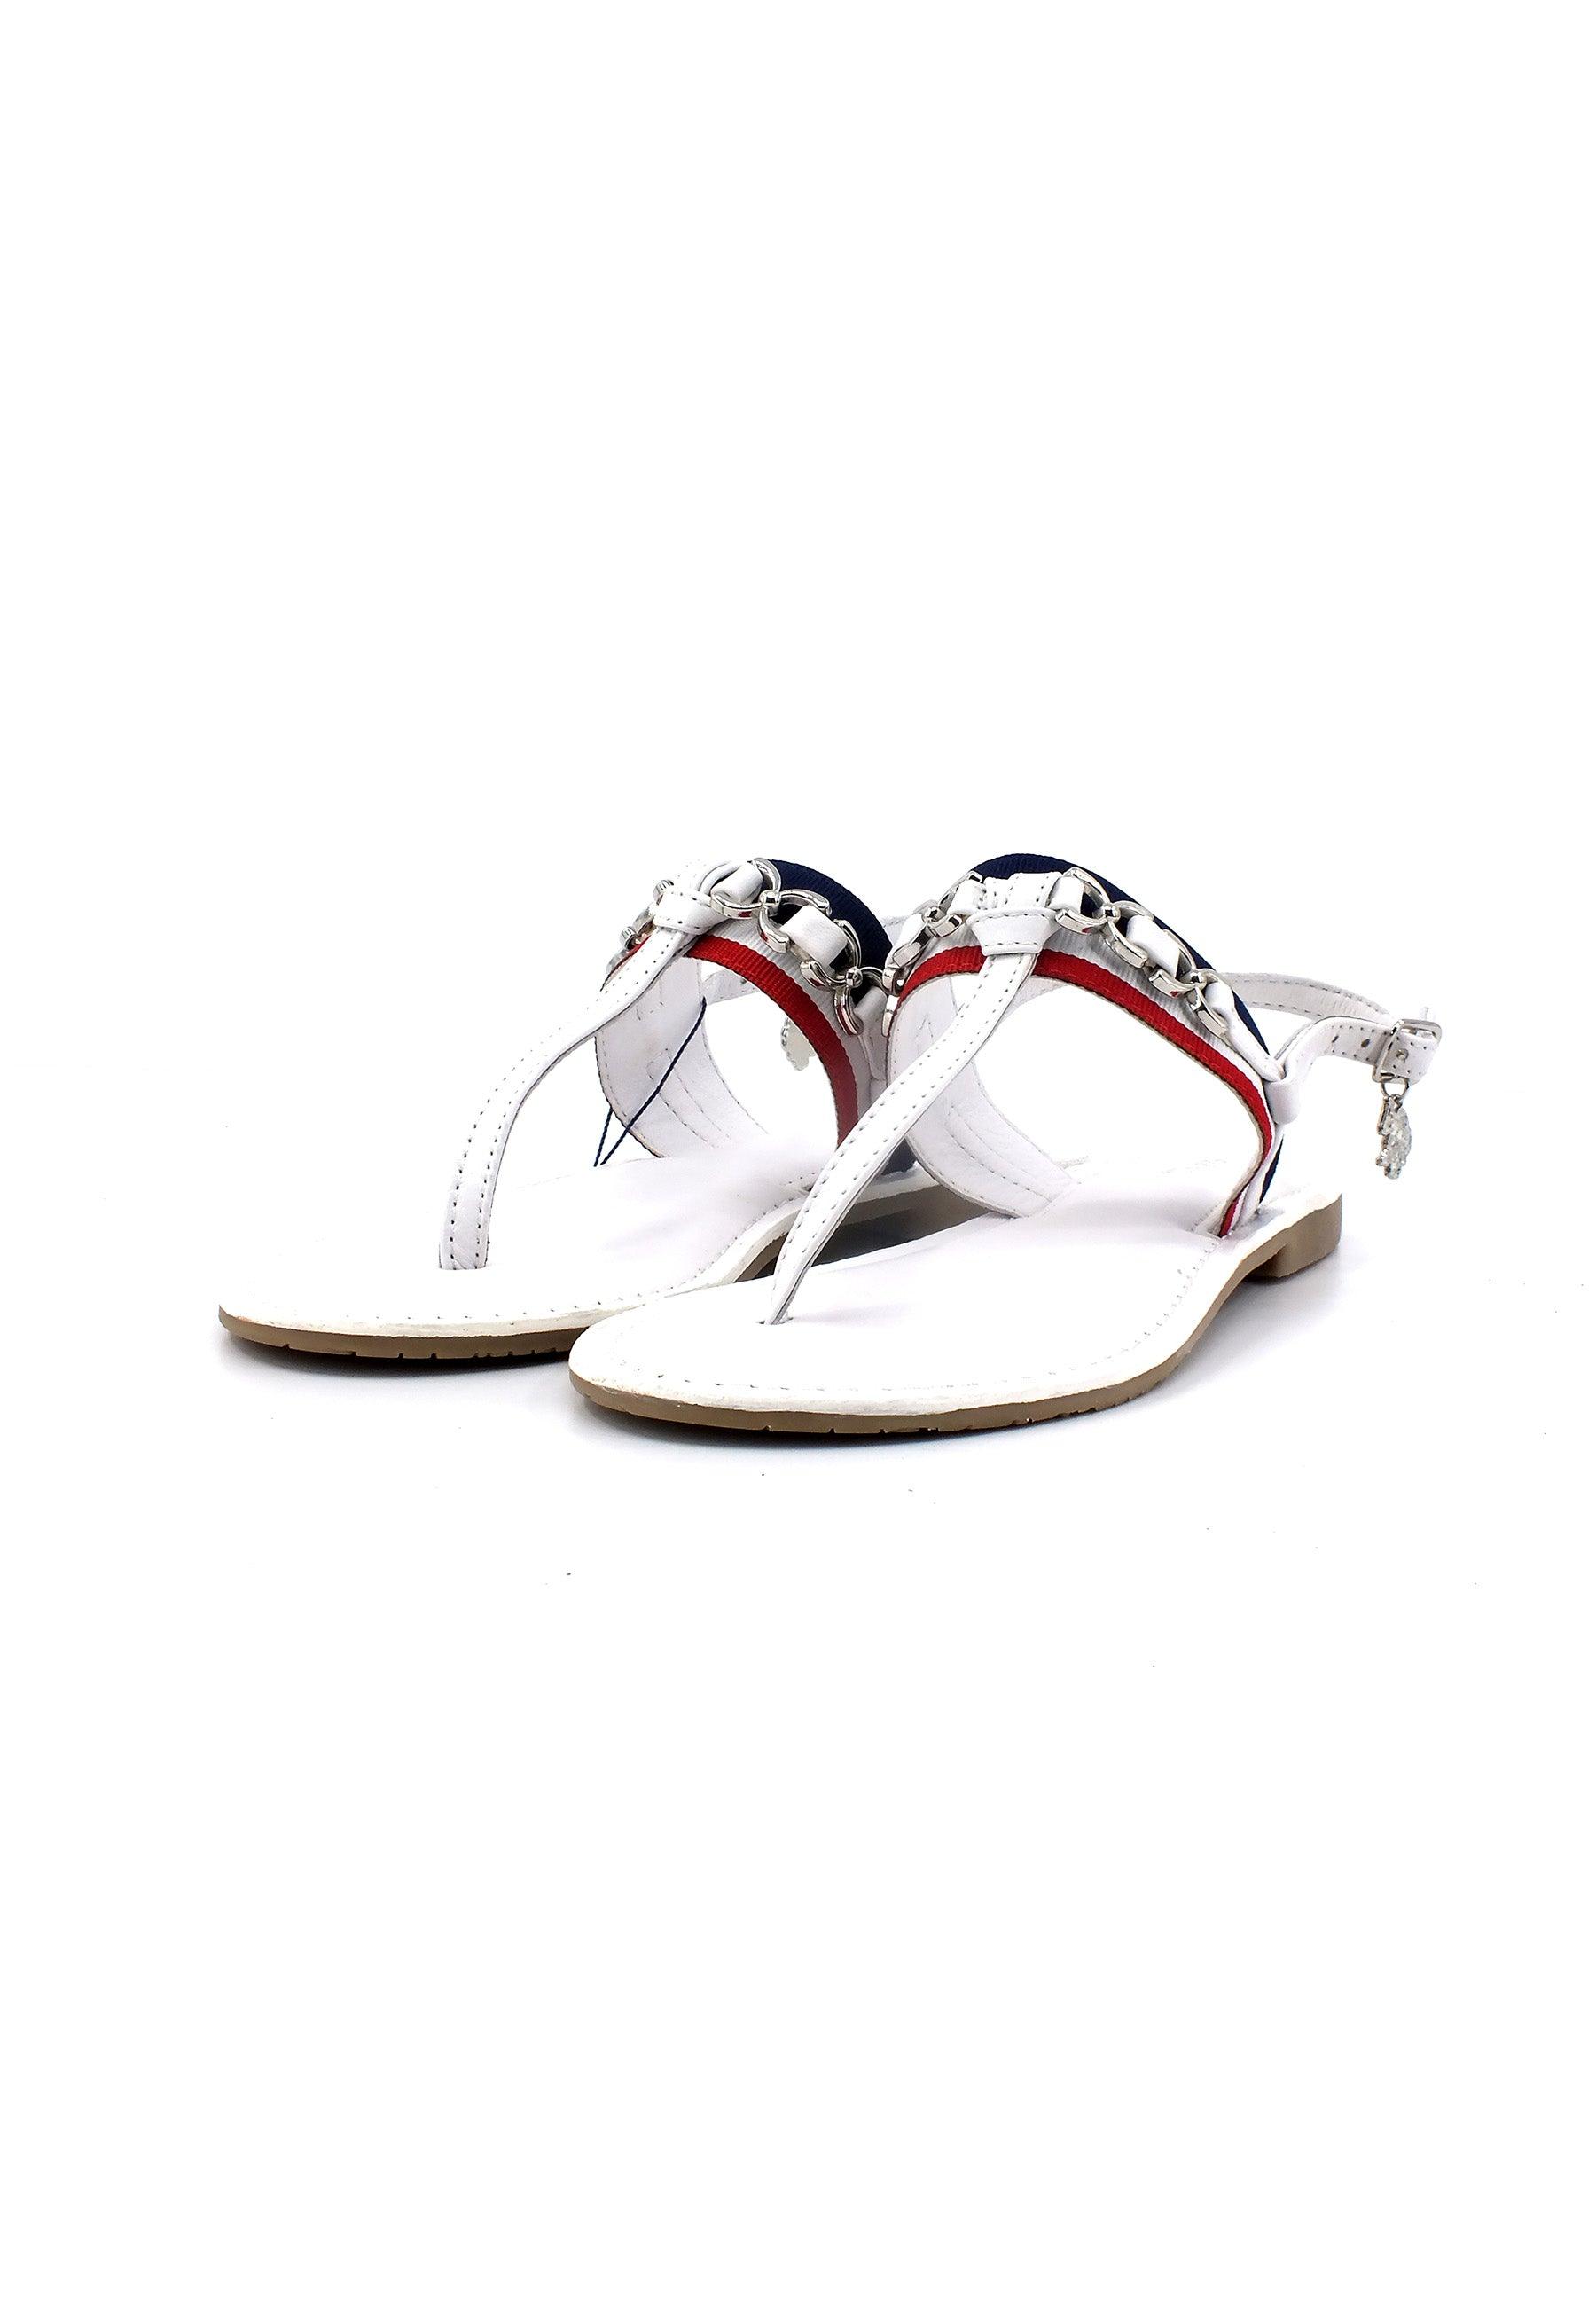 U.S. POLO ASSN. Sandalo Infradito Donna White Red LINDA002 - Sandrini Calzature e Abbigliamento